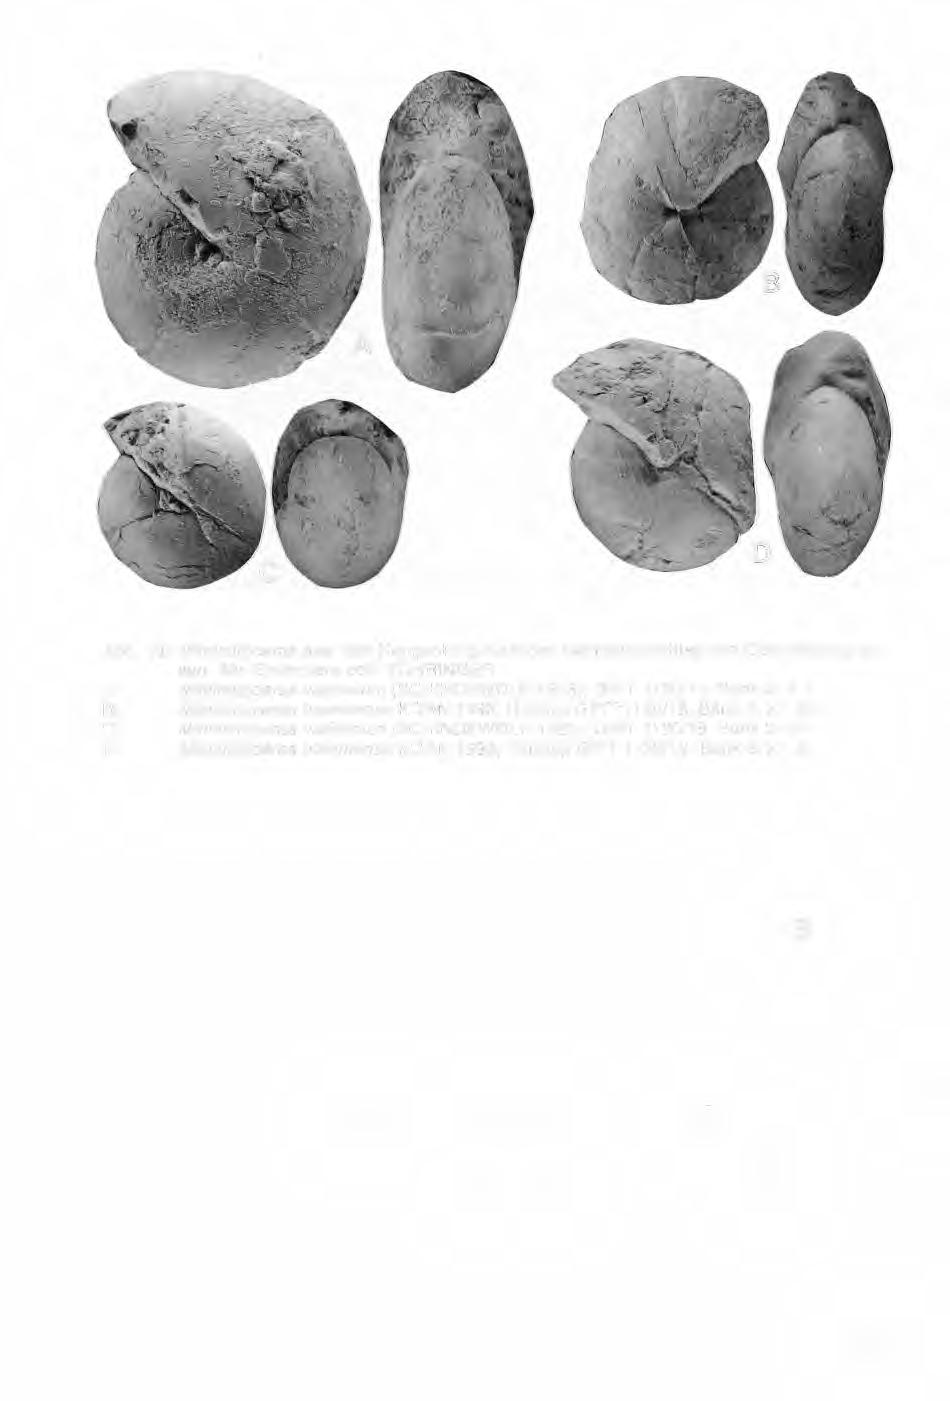 Abb. 19: Mimimitoceras aus dem Hangenberg-Kalk des Bahneinschnittes von